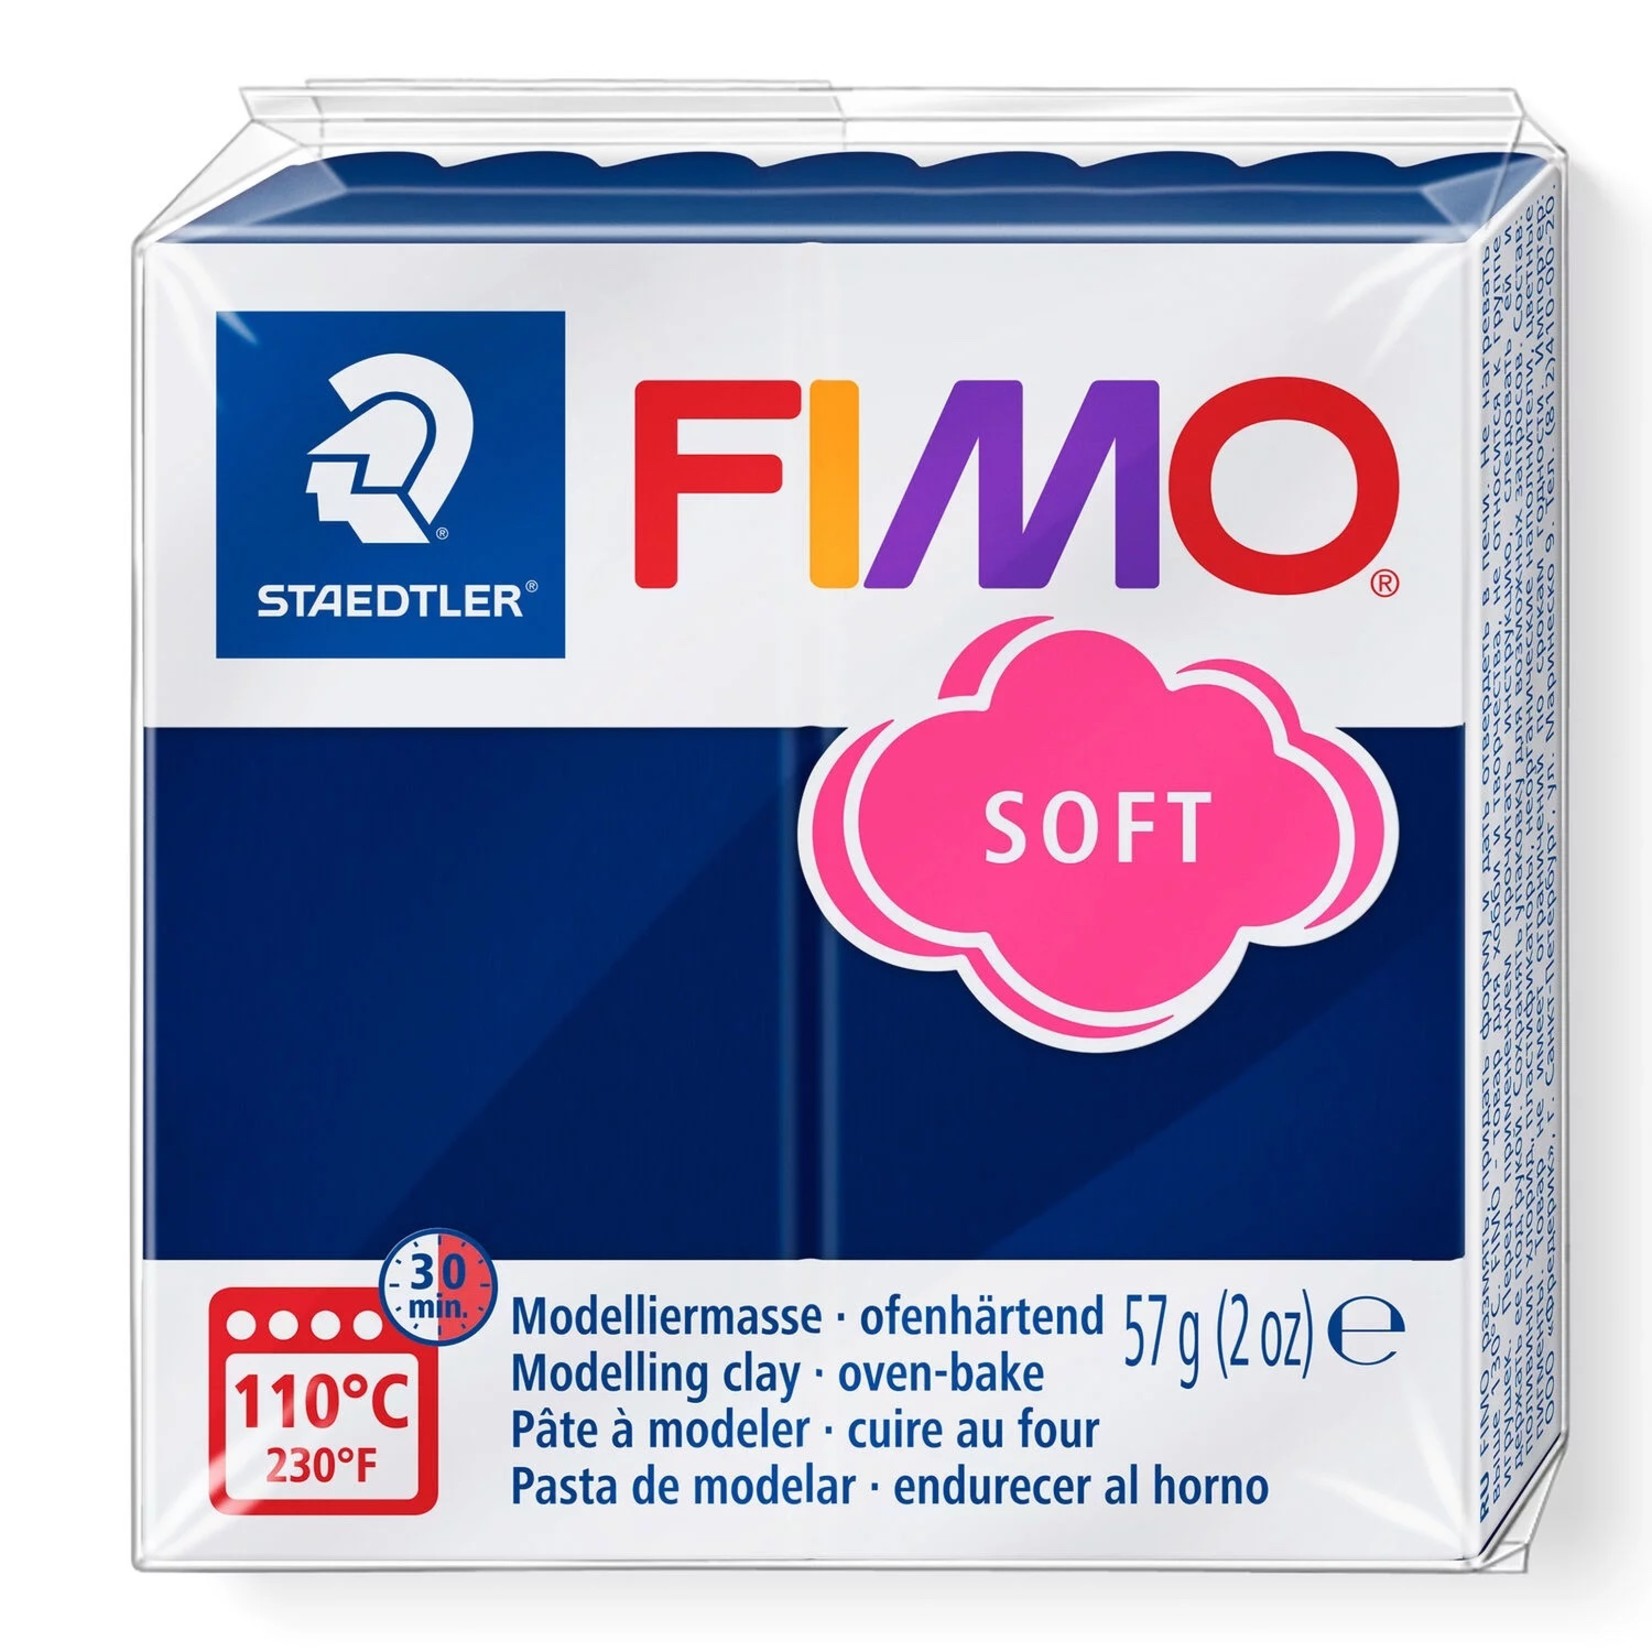 STAEDTLER FIMO SOFT 35 WINDSOR BLUE